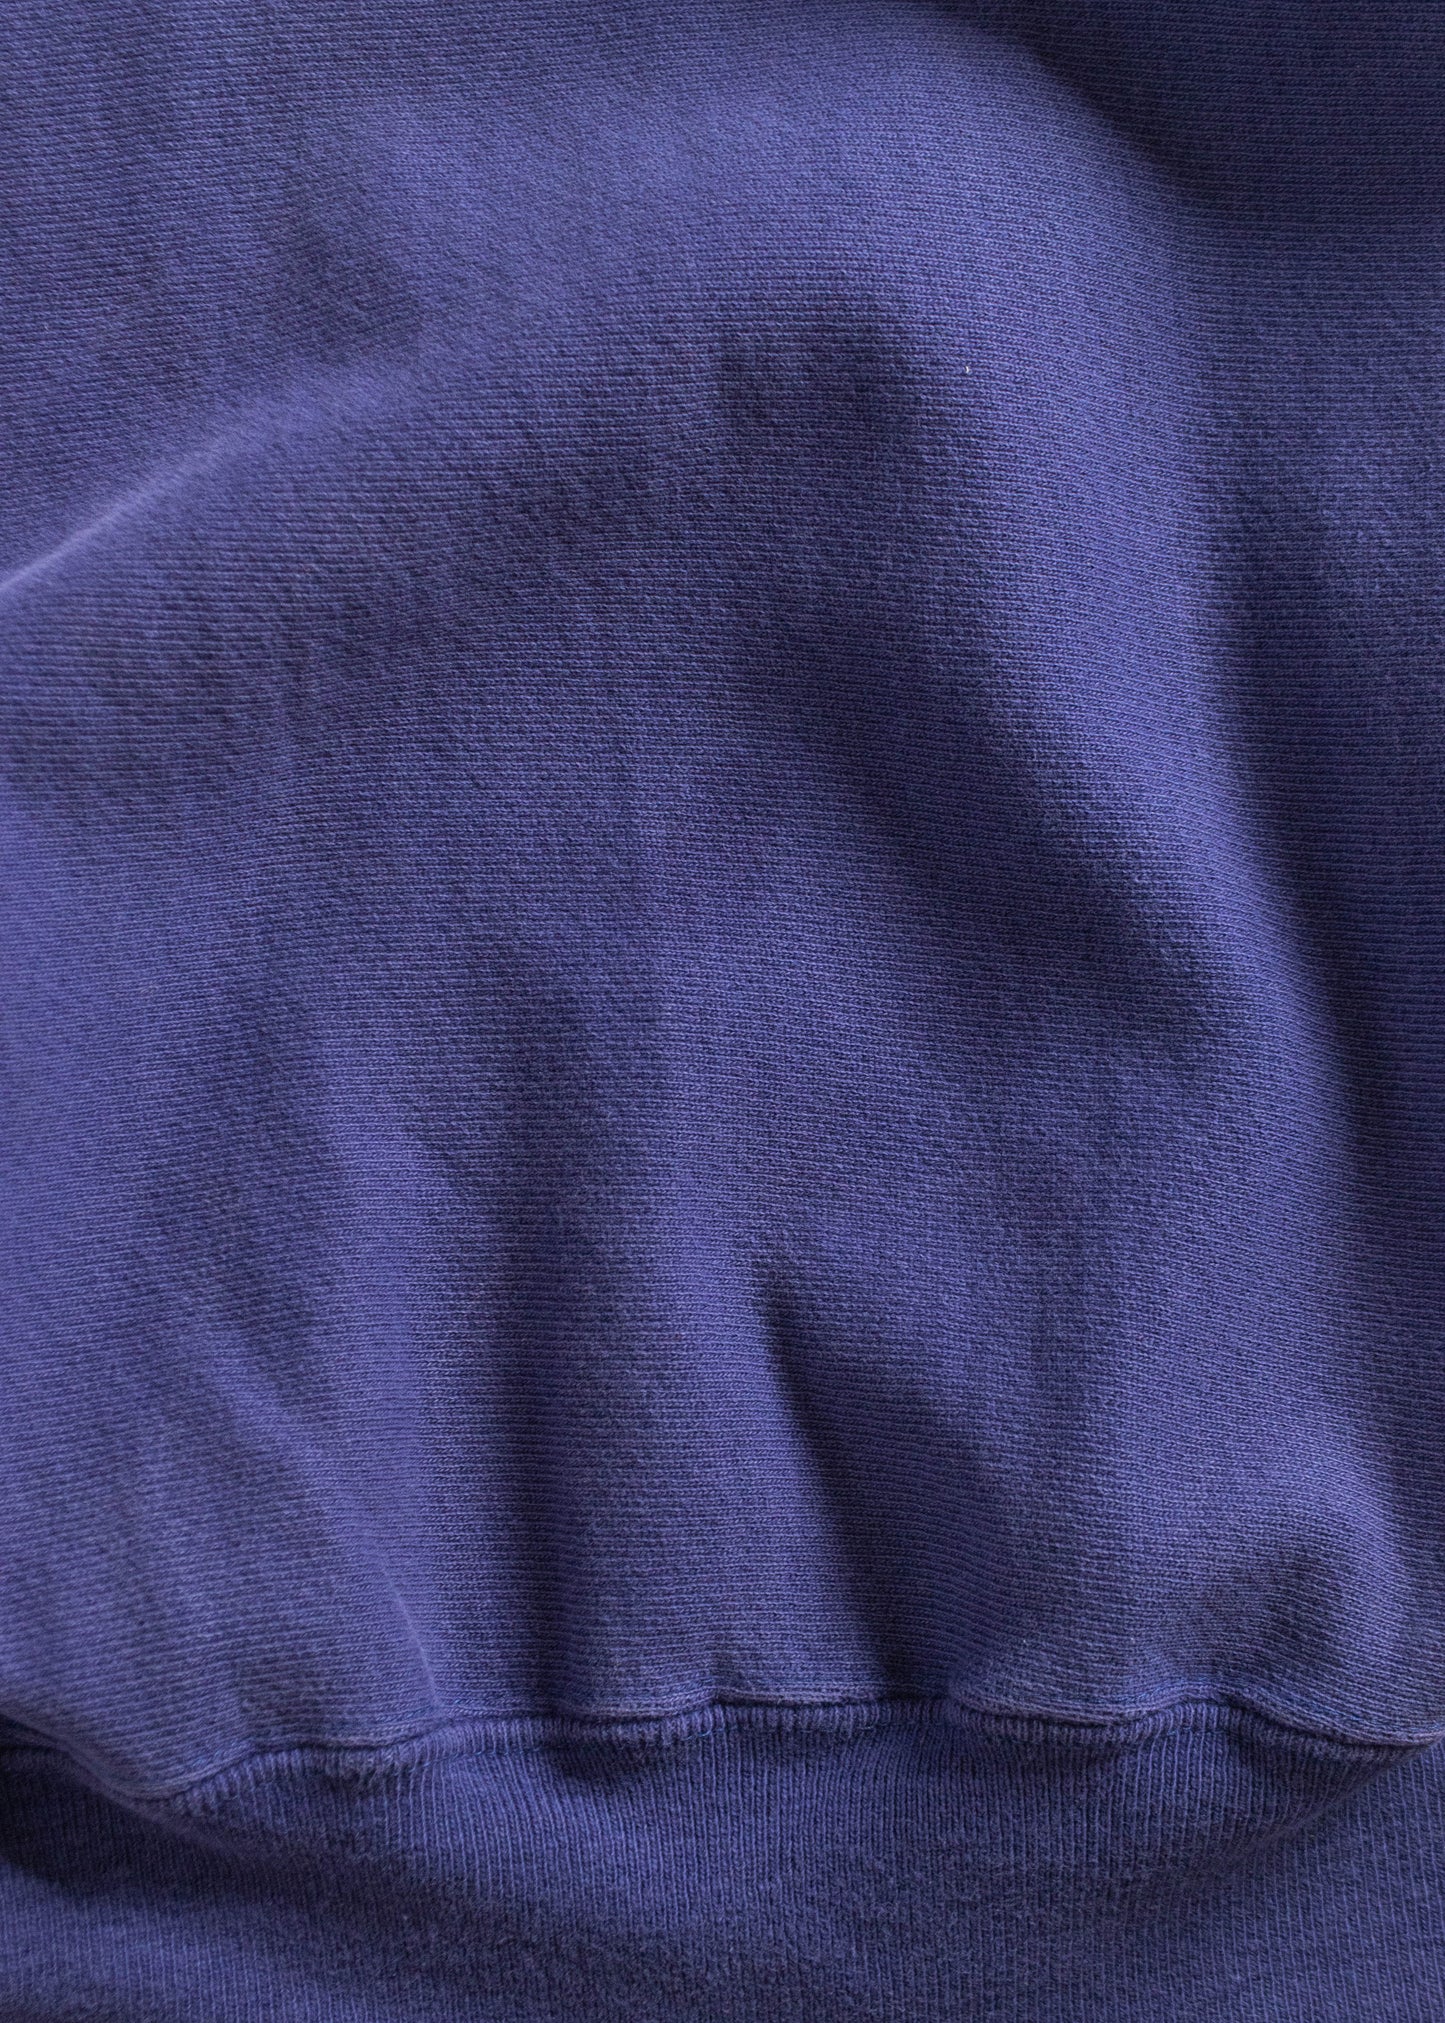 Vintage 1990s Champion Reverse Weave Blue Sweatshirt Size M/L